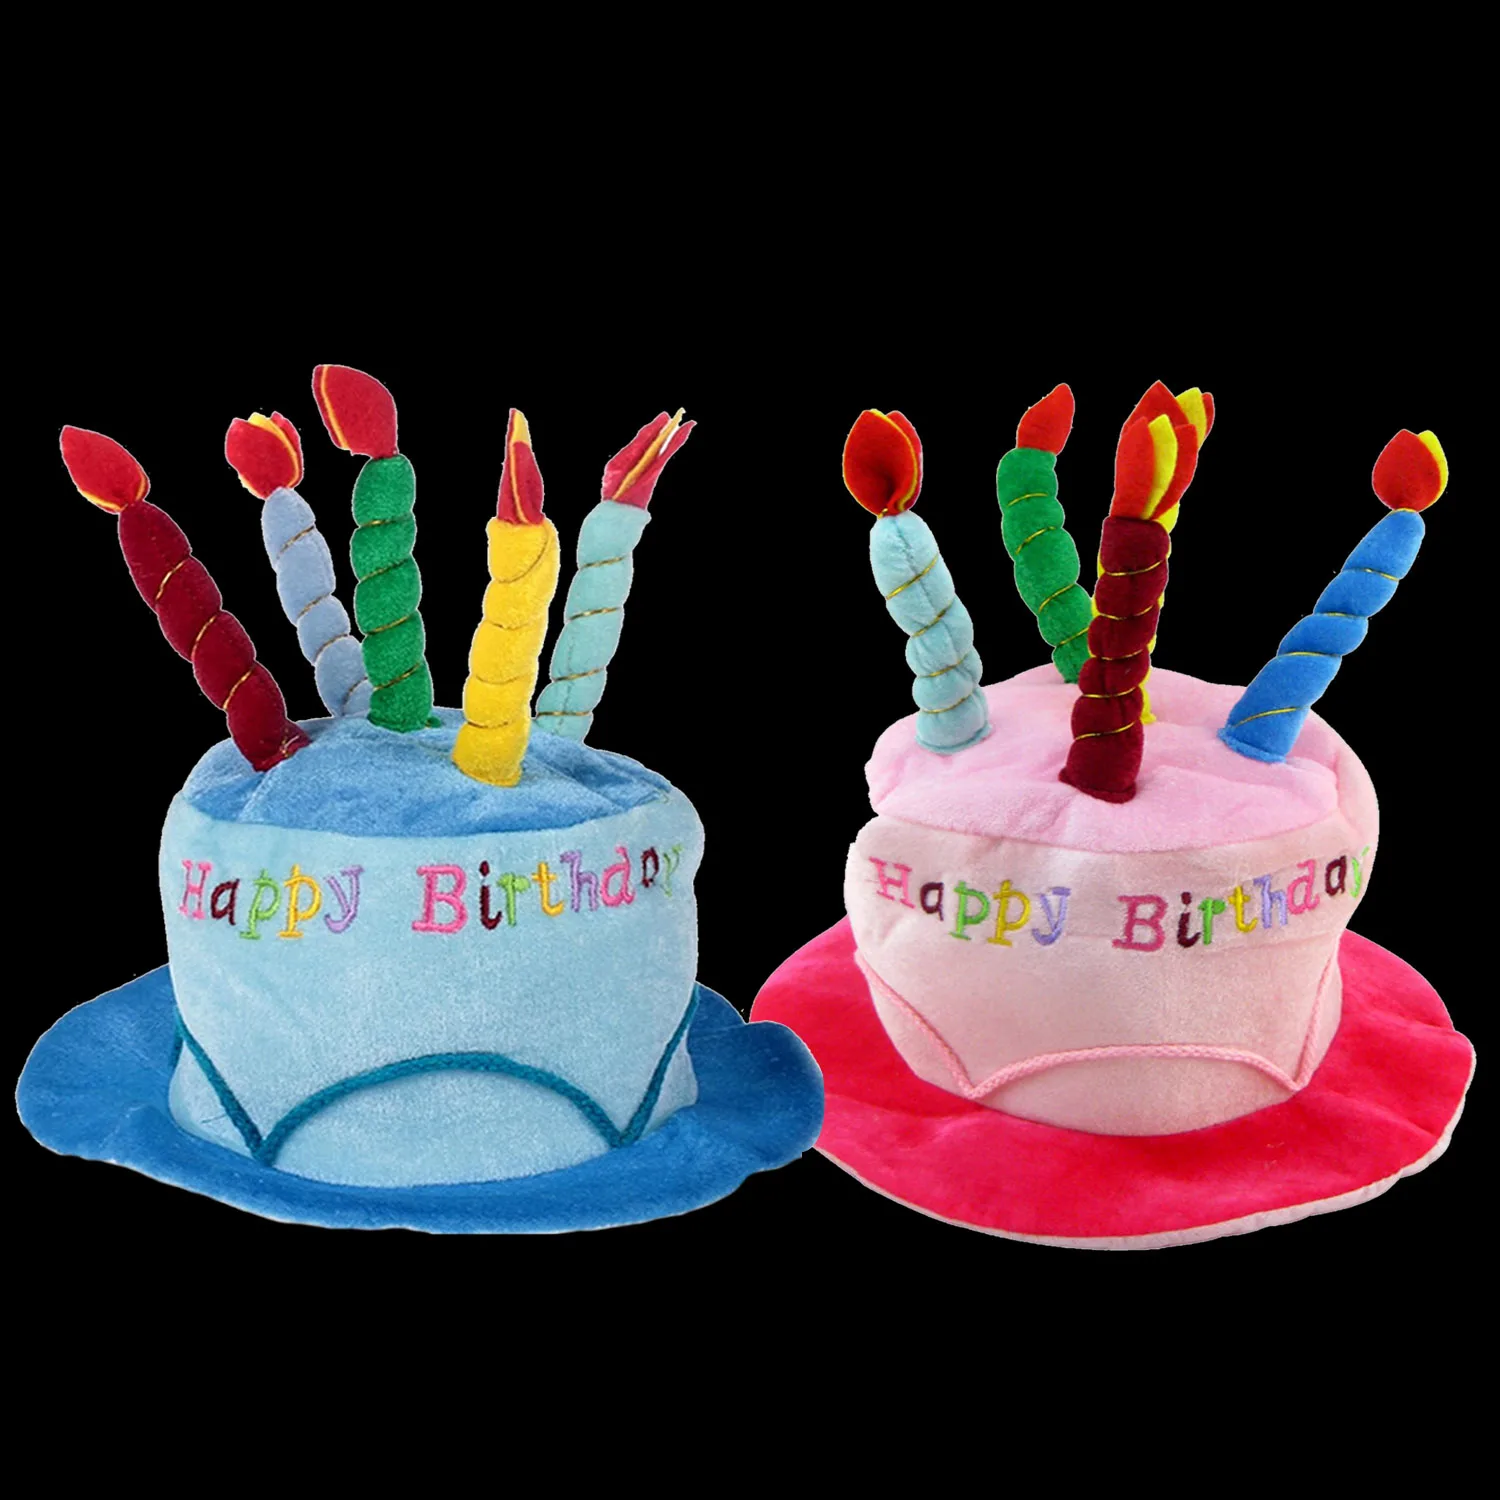 Взрослые торт ко дню рождения свечи Стиль мягкая тела для дня вечерние шляпа